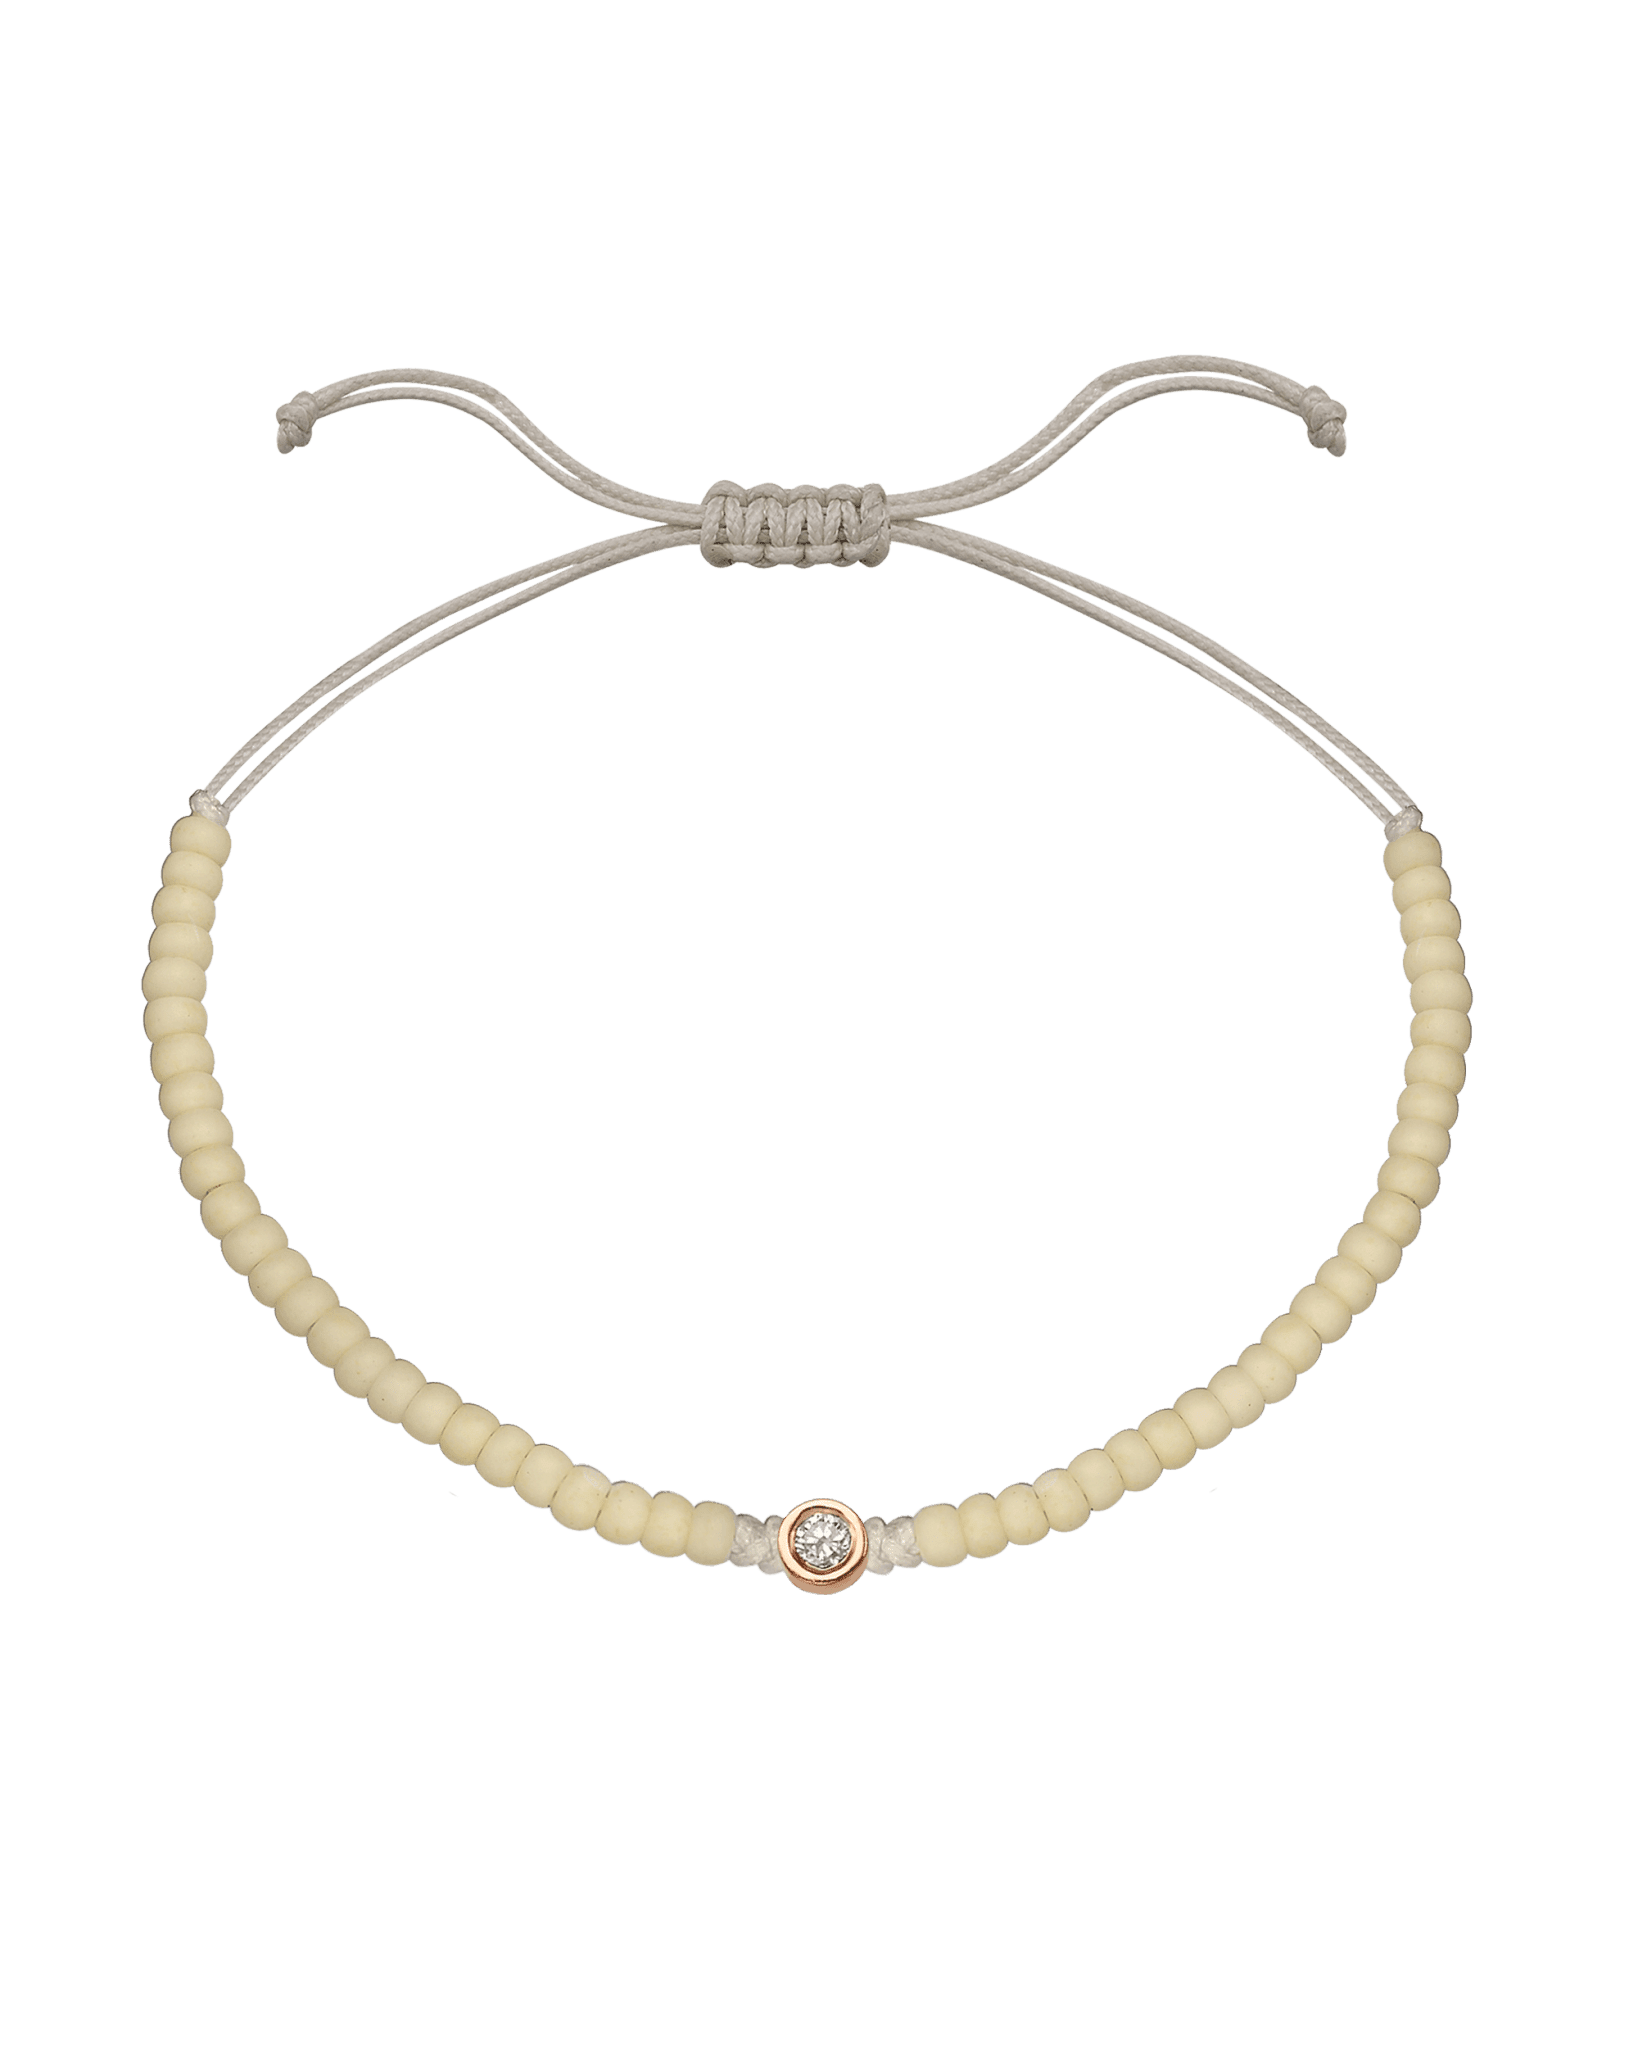 Off White Beads String of Love - 14K Rose Gold Bracelets magal-dev Medium: 0.04ct 